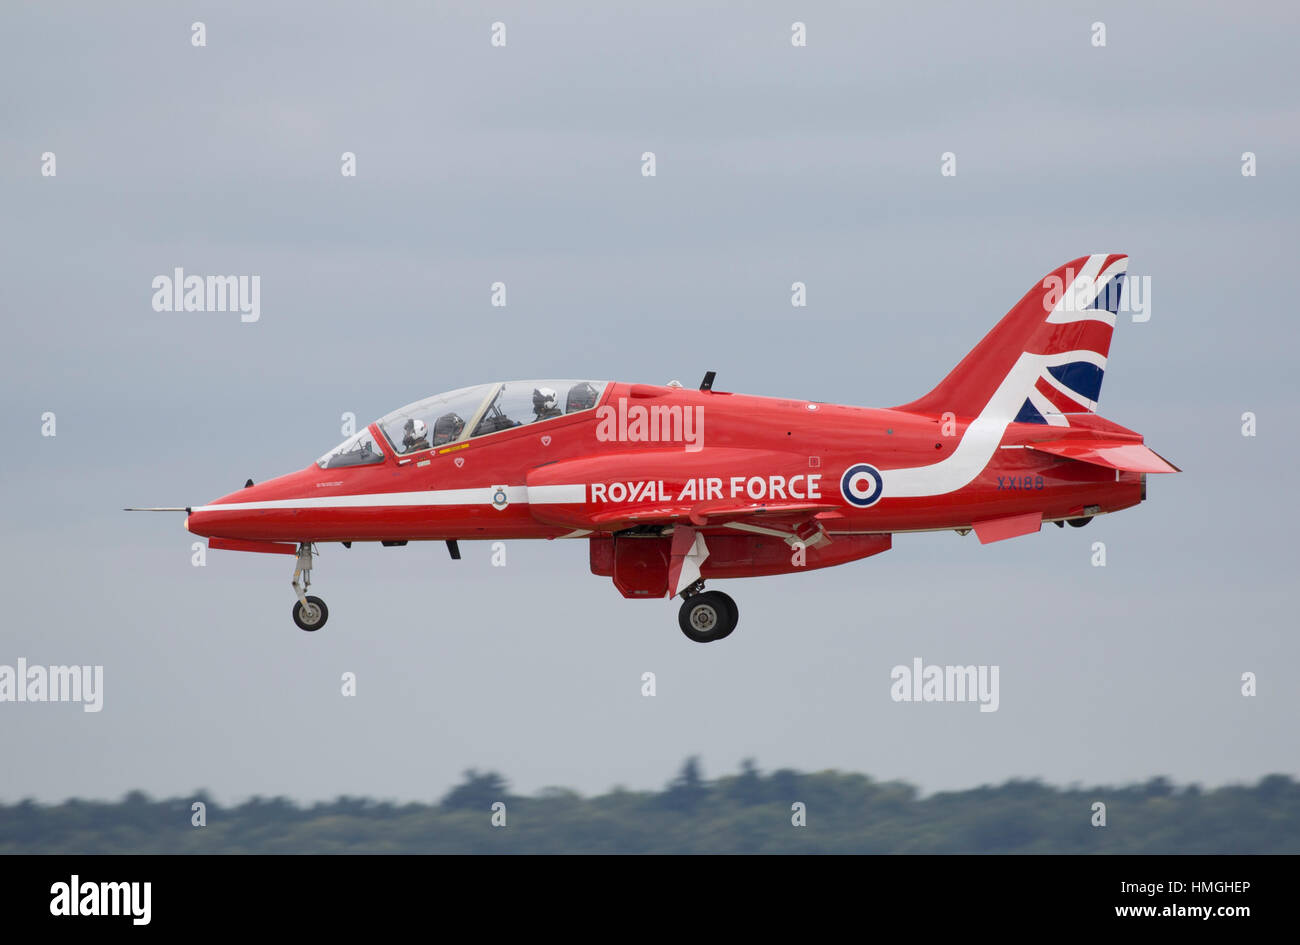 Royal Air Force d'avions BAe Hawk T1 de l'affichage des flèches rouges à l'atterrissage à l'équipe de Farnborough International Air Show 2016 Banque D'Images